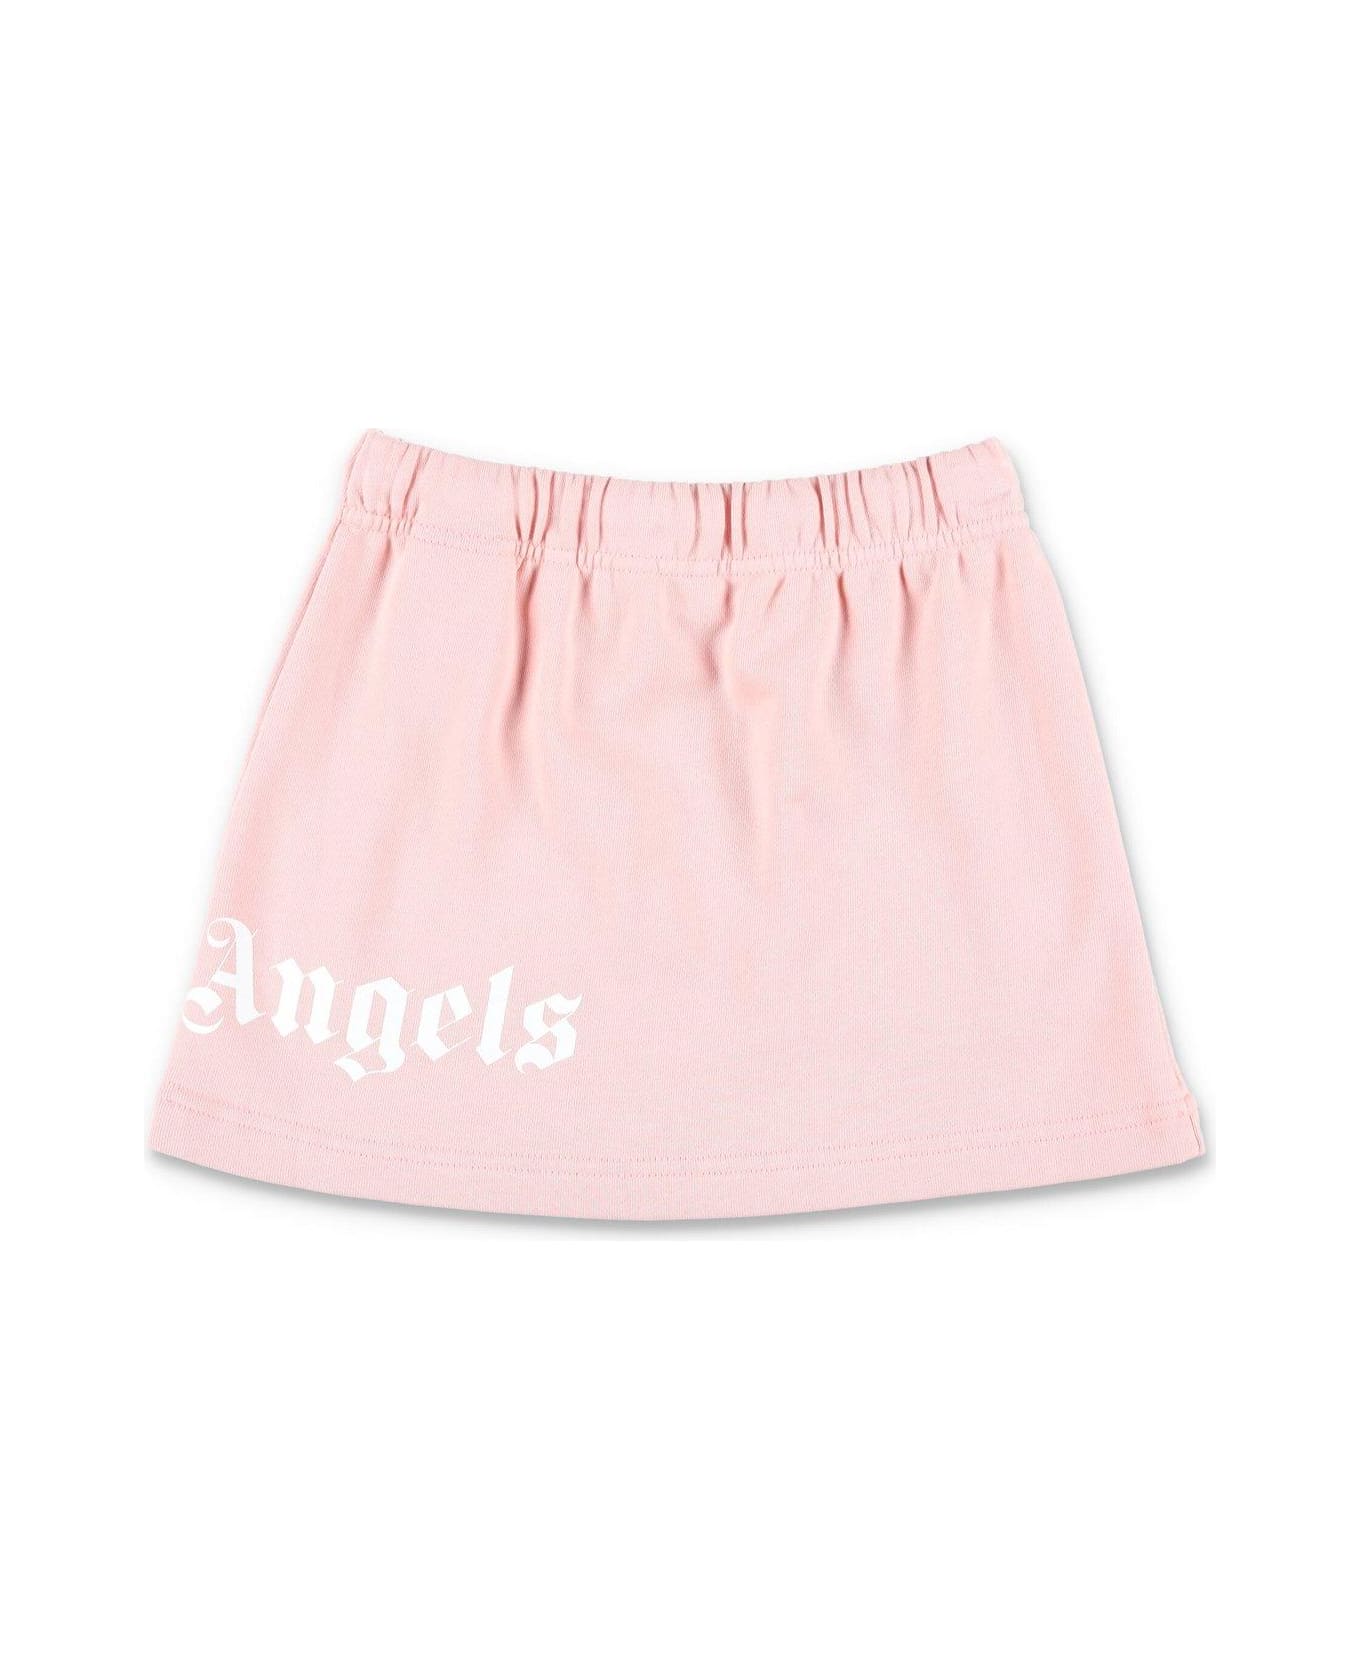 Palm Angels High Waist Drawstring Skirt - PINK